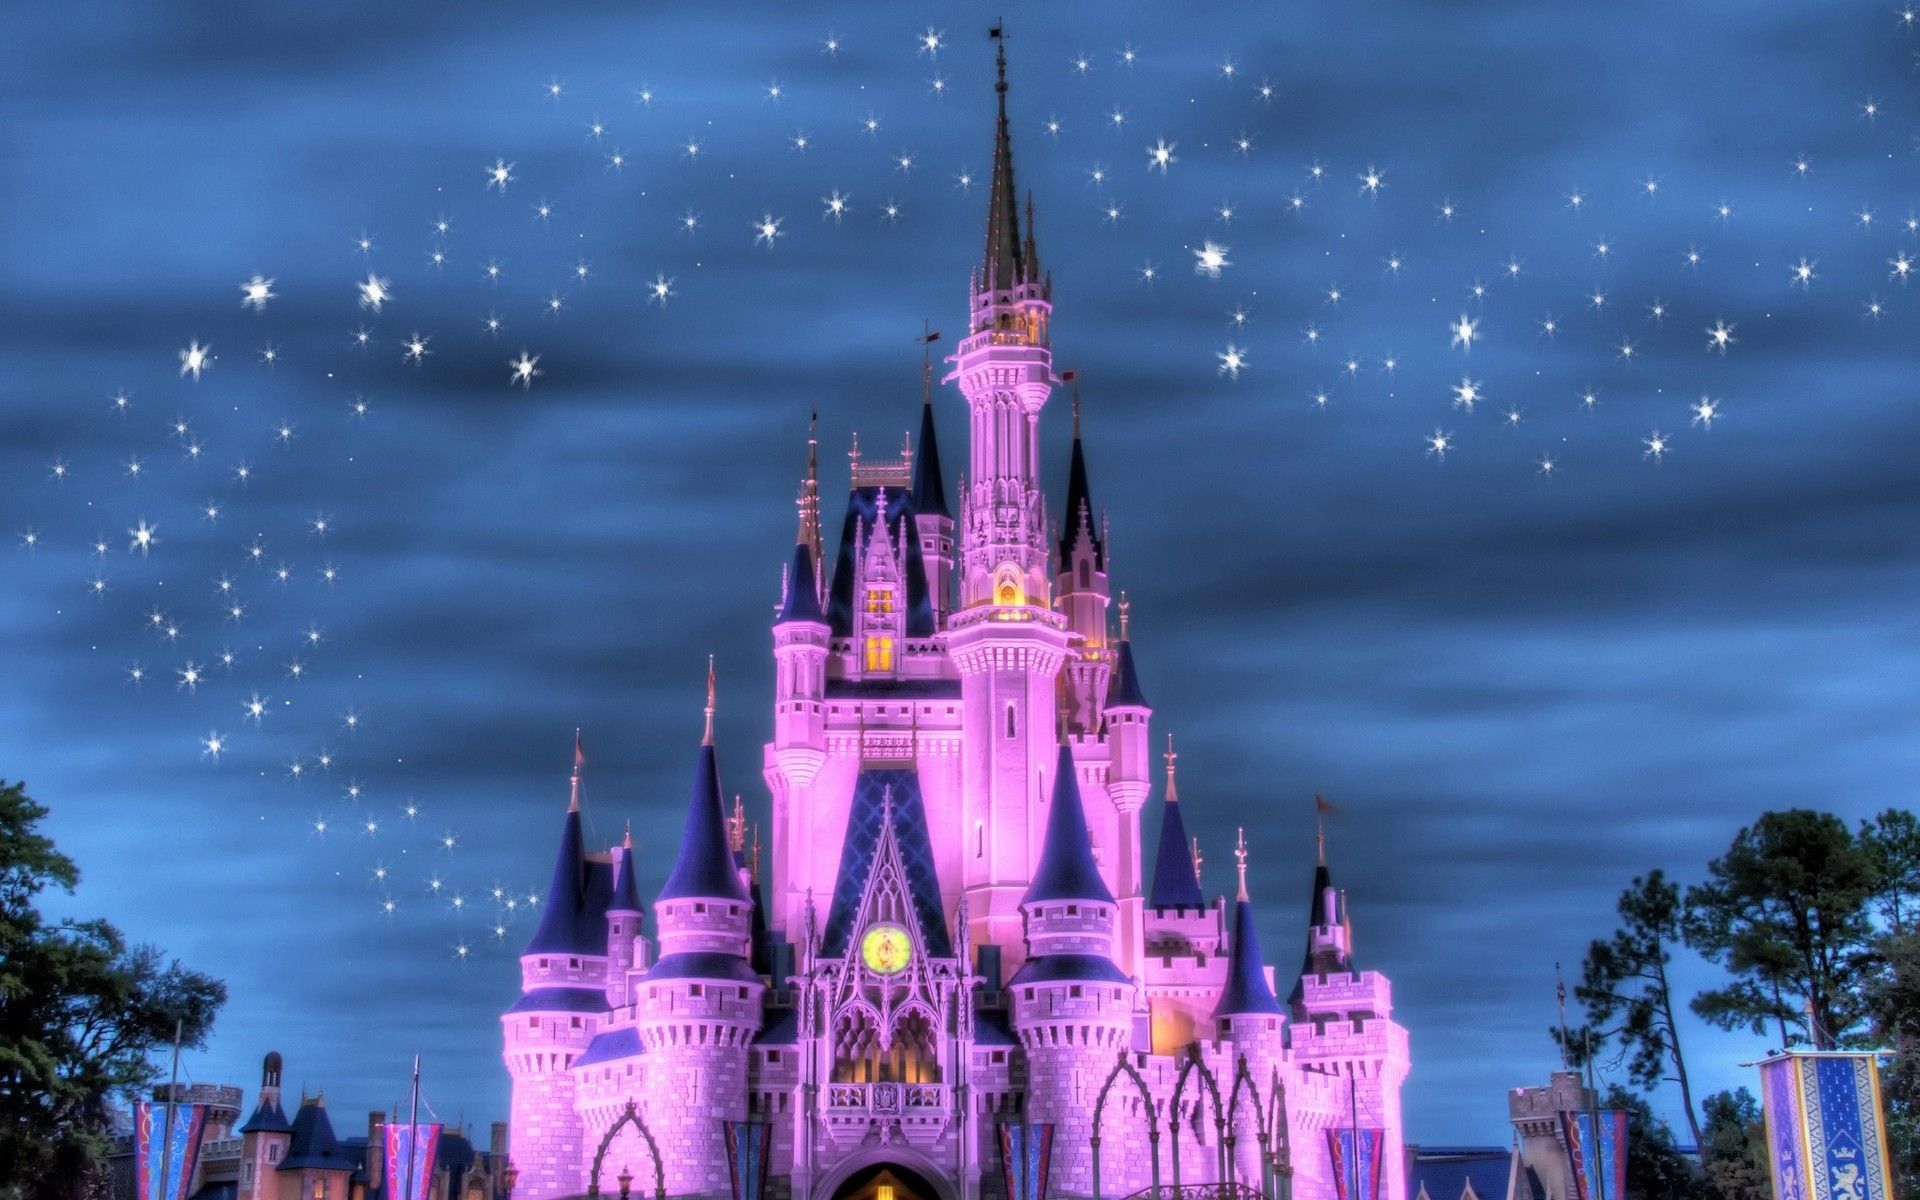 Disney World Desktop Wallpapers sẽ giúp bạn tự đưa mình đến với thế giới kỳ diệu của Disney. Với những hình ảnh đầy phù thủy và màu sắc tươi vui, đây sẽ là một trải nghiệm đáng nhớ cho bạn. Hãy xem bức ảnh liên quan và khám phá vẻ đẹp của Disney World.